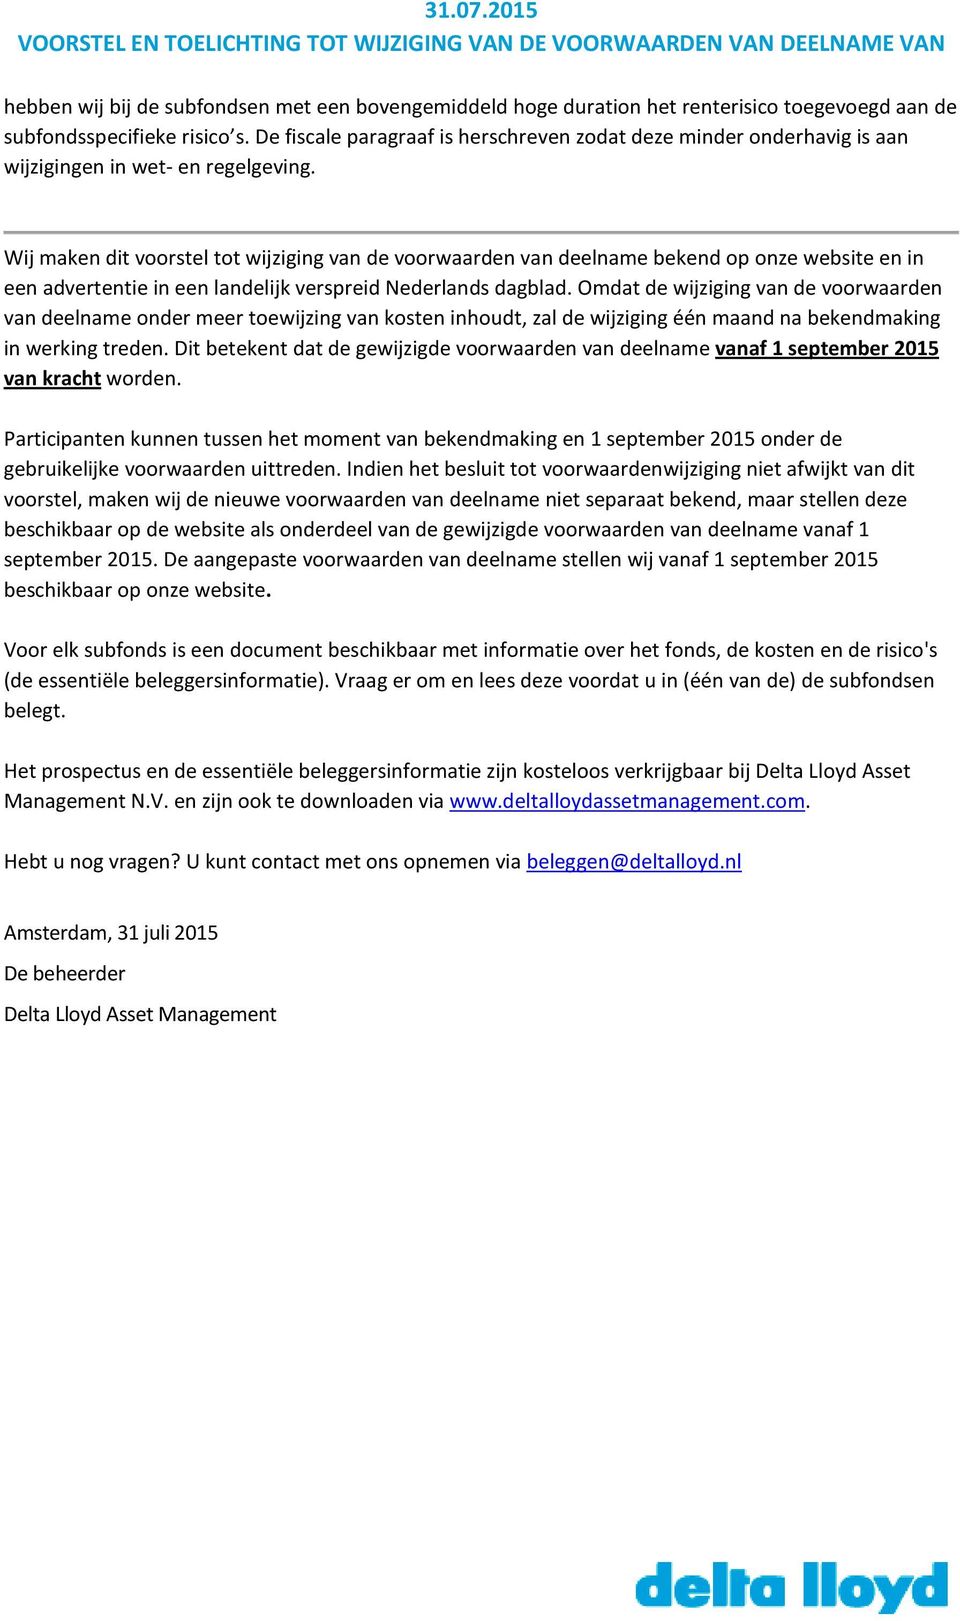 Wij maken dit voorstel tot wijziging van de voorwaarden van deelname bekend op onze website en in een advertentie in een landelijk verspreid Nederlands dagblad.